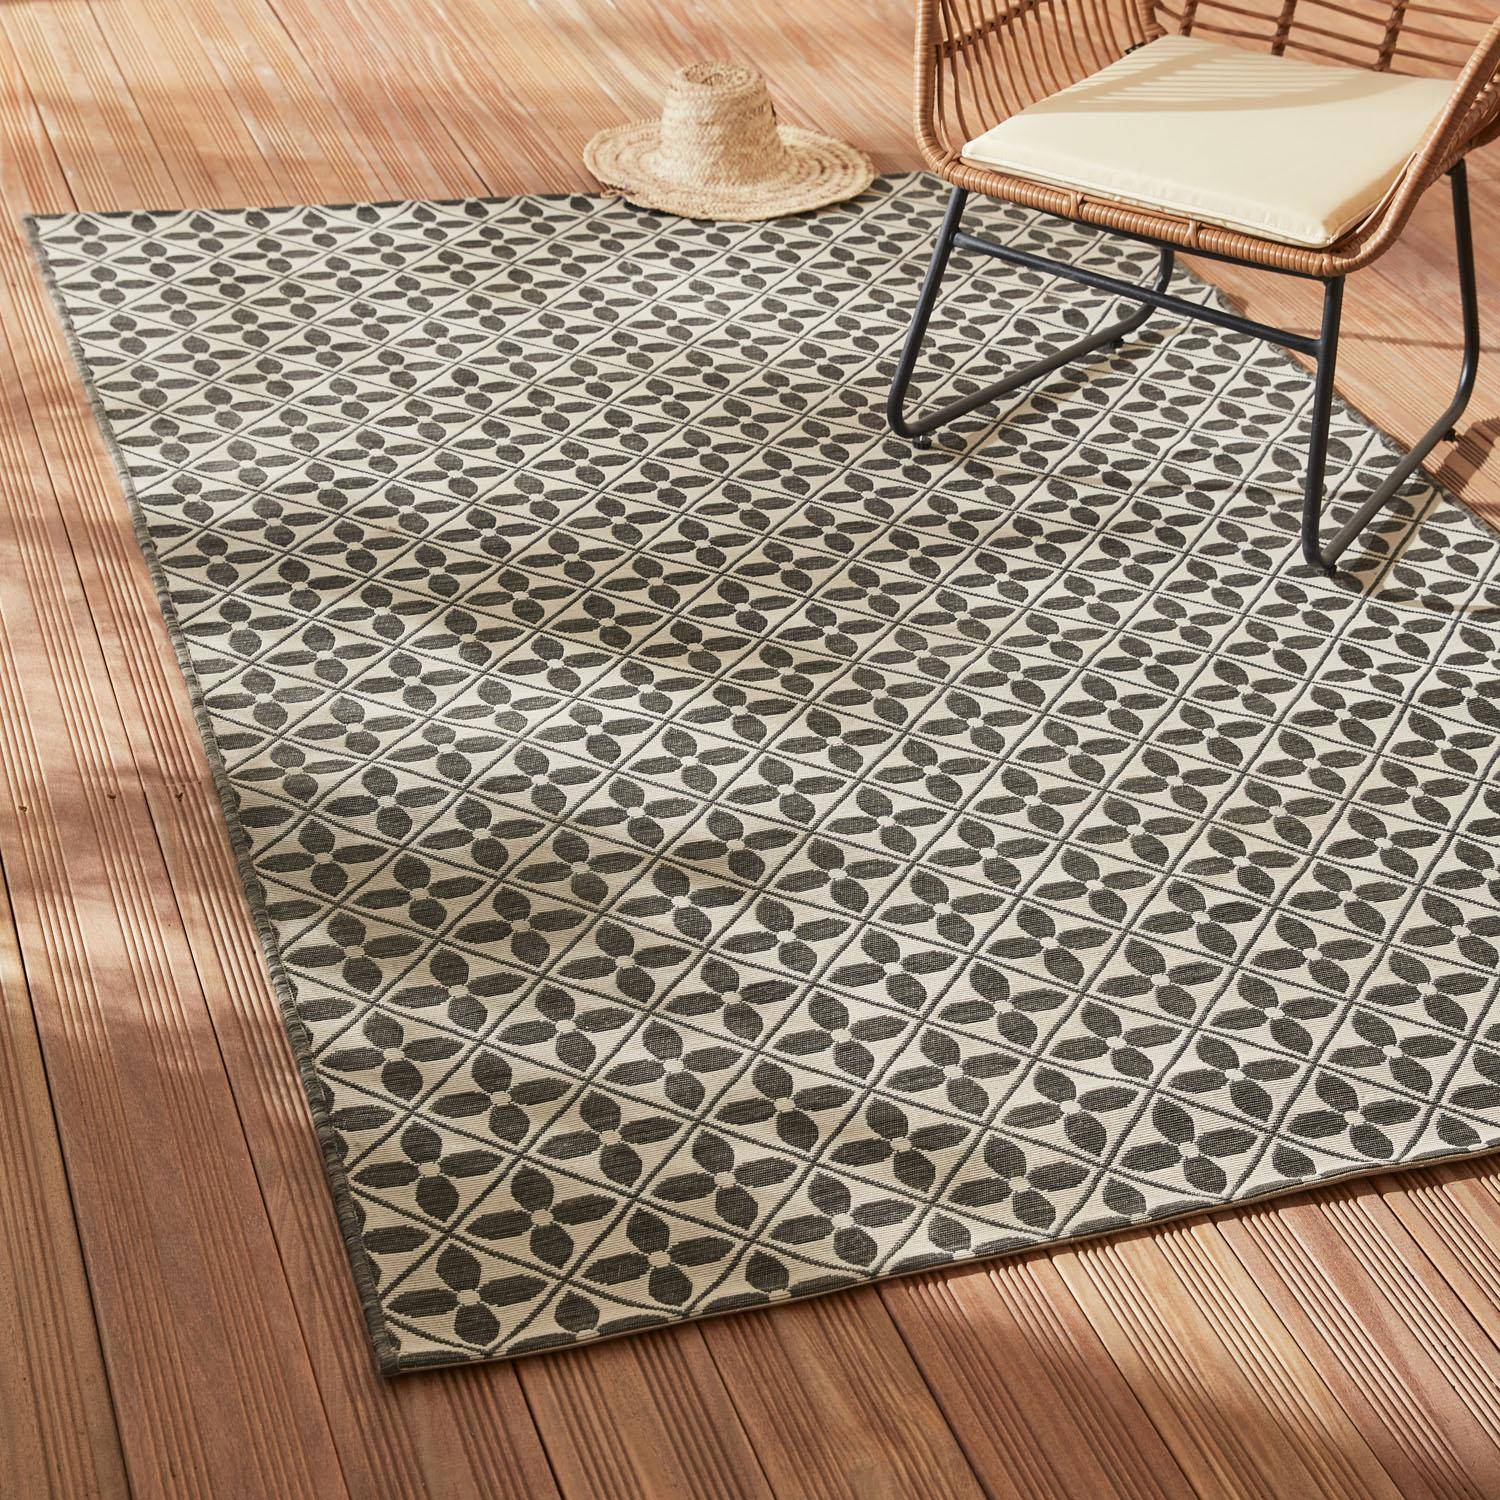 Outdoor rug - 160x230cm - rectangular, indoor/outdoor use - Heritage - Black Photo1